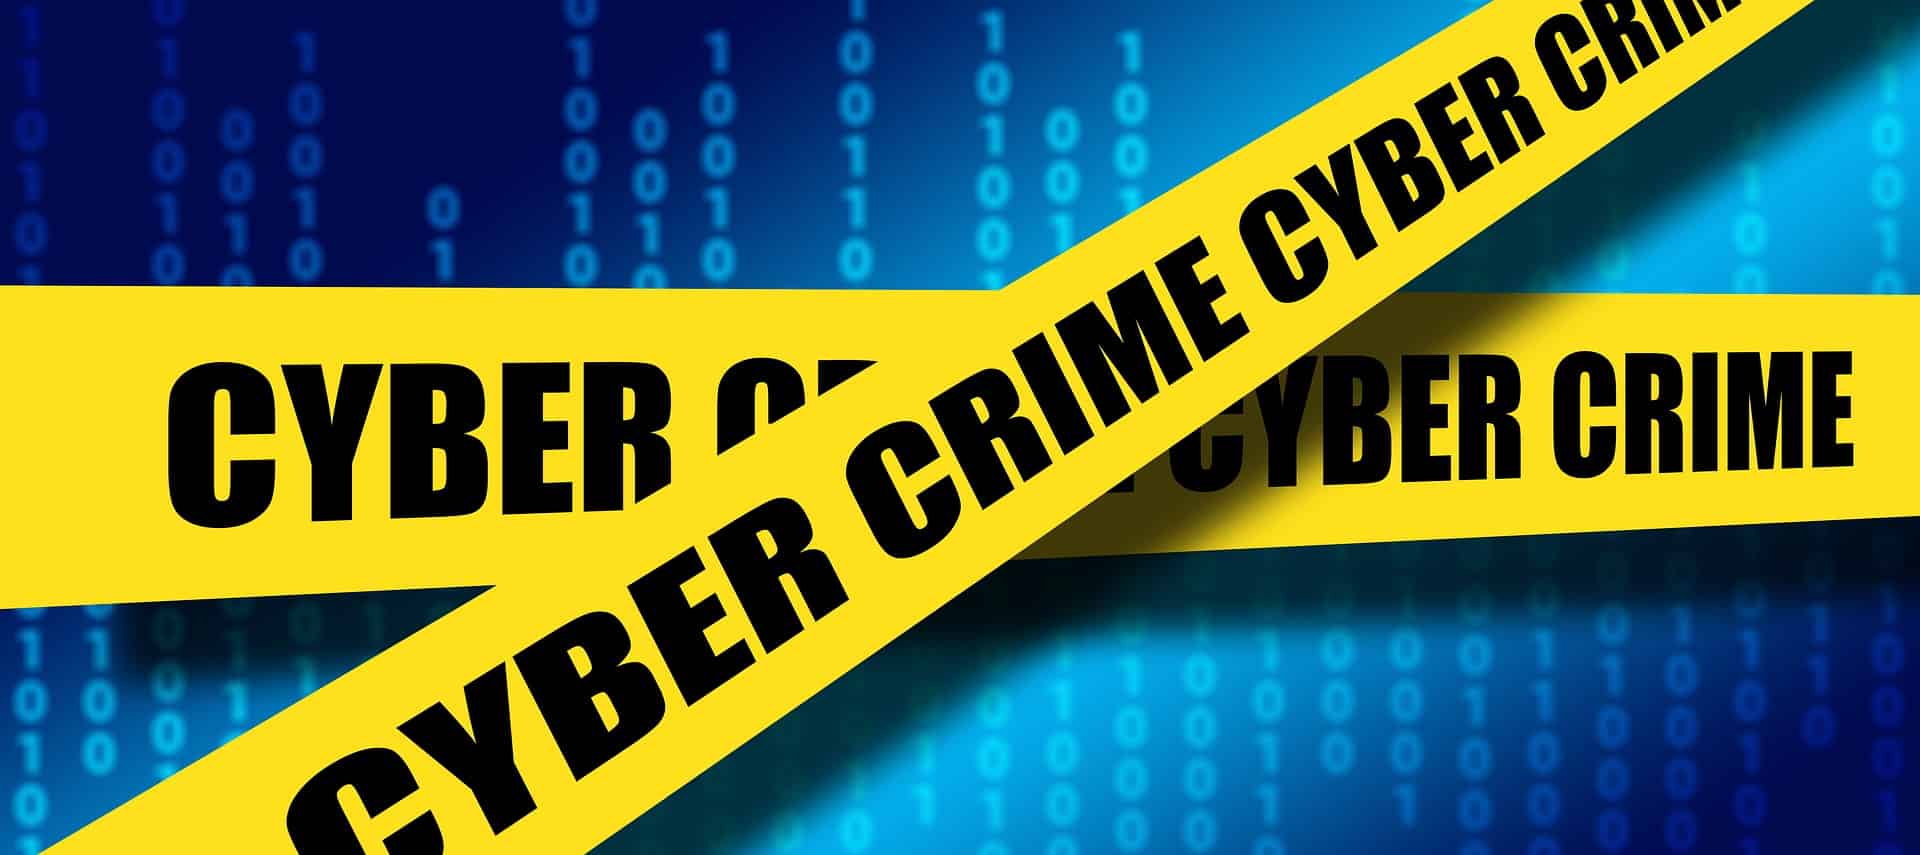 صعود العملات الرقمية يولد جرائم إلكترونية جديدة